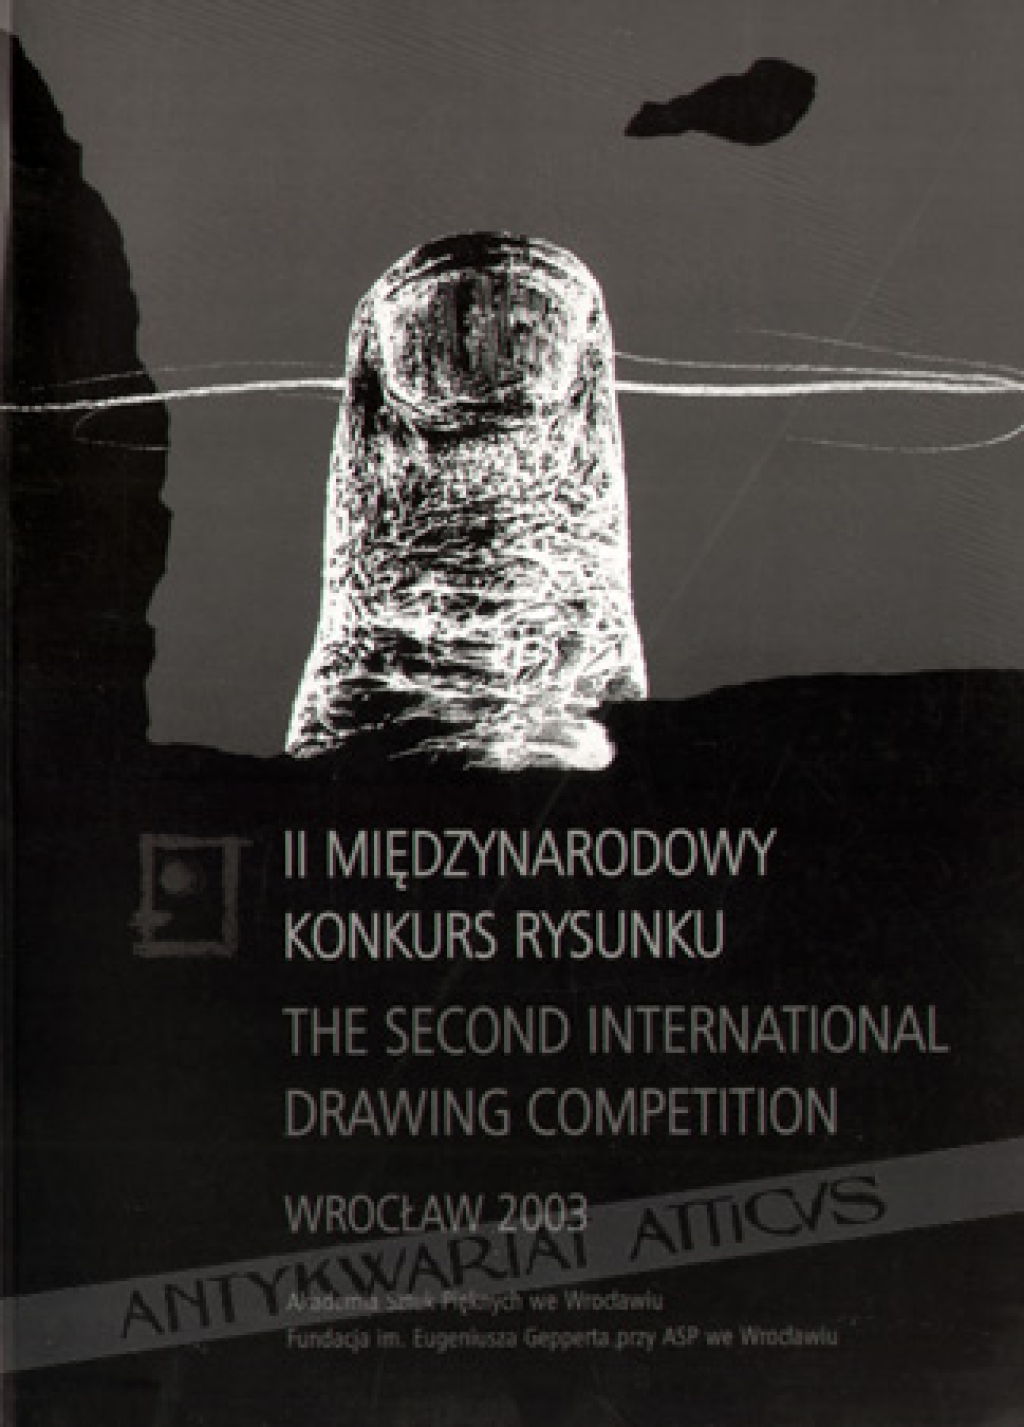 Katalog wystawy II Międzynarodowy Konkurs Rysunku Katalog wystawy malarstwa i rysunkuThe Second International Drawing Competition